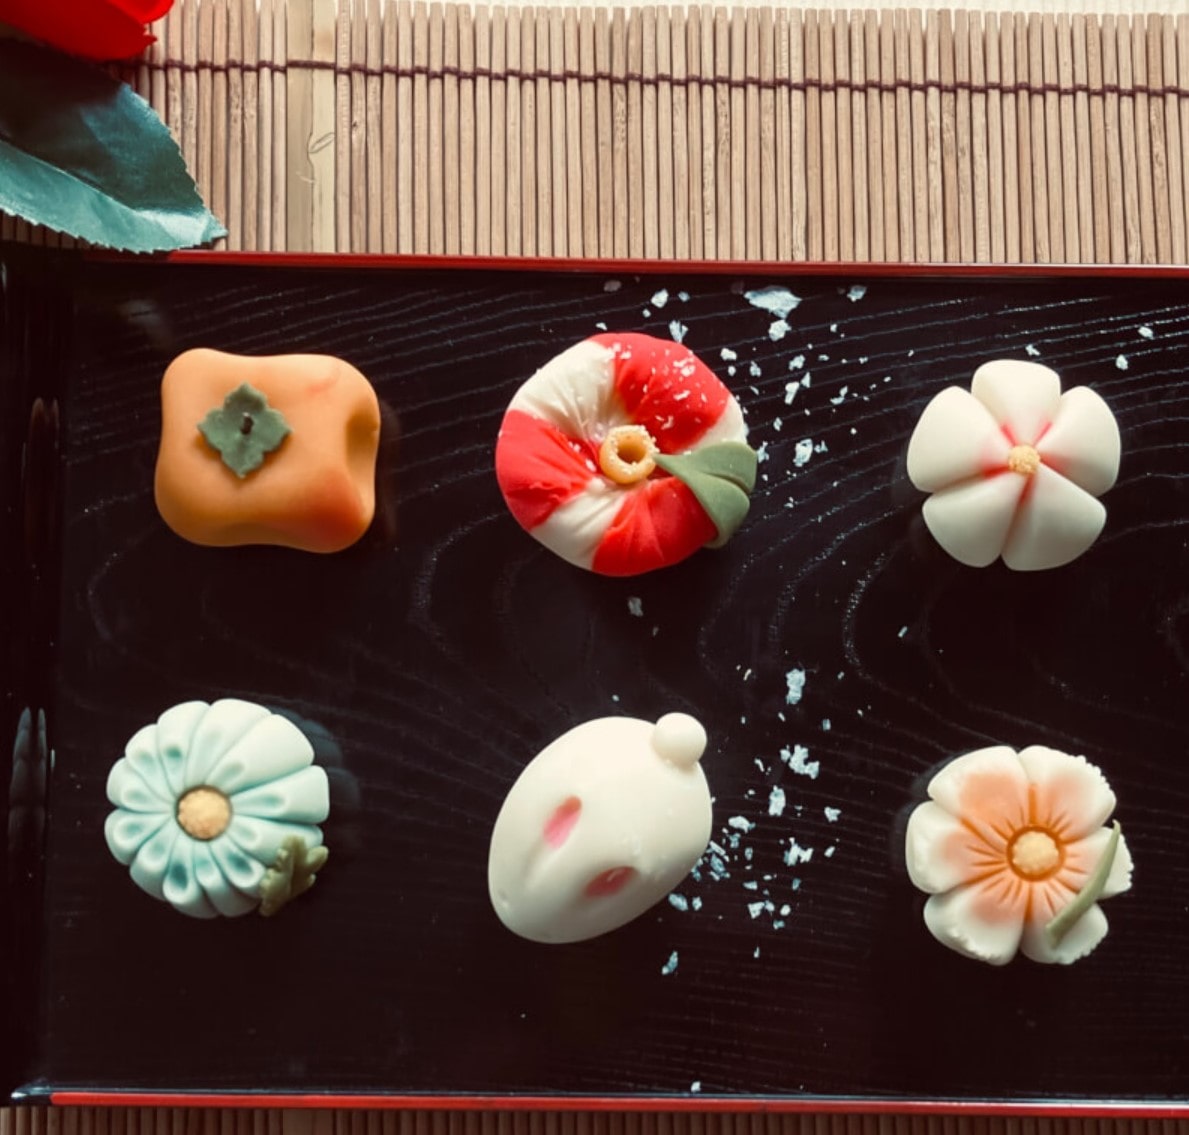 “Wagashi” Traditional Japanese Desserts